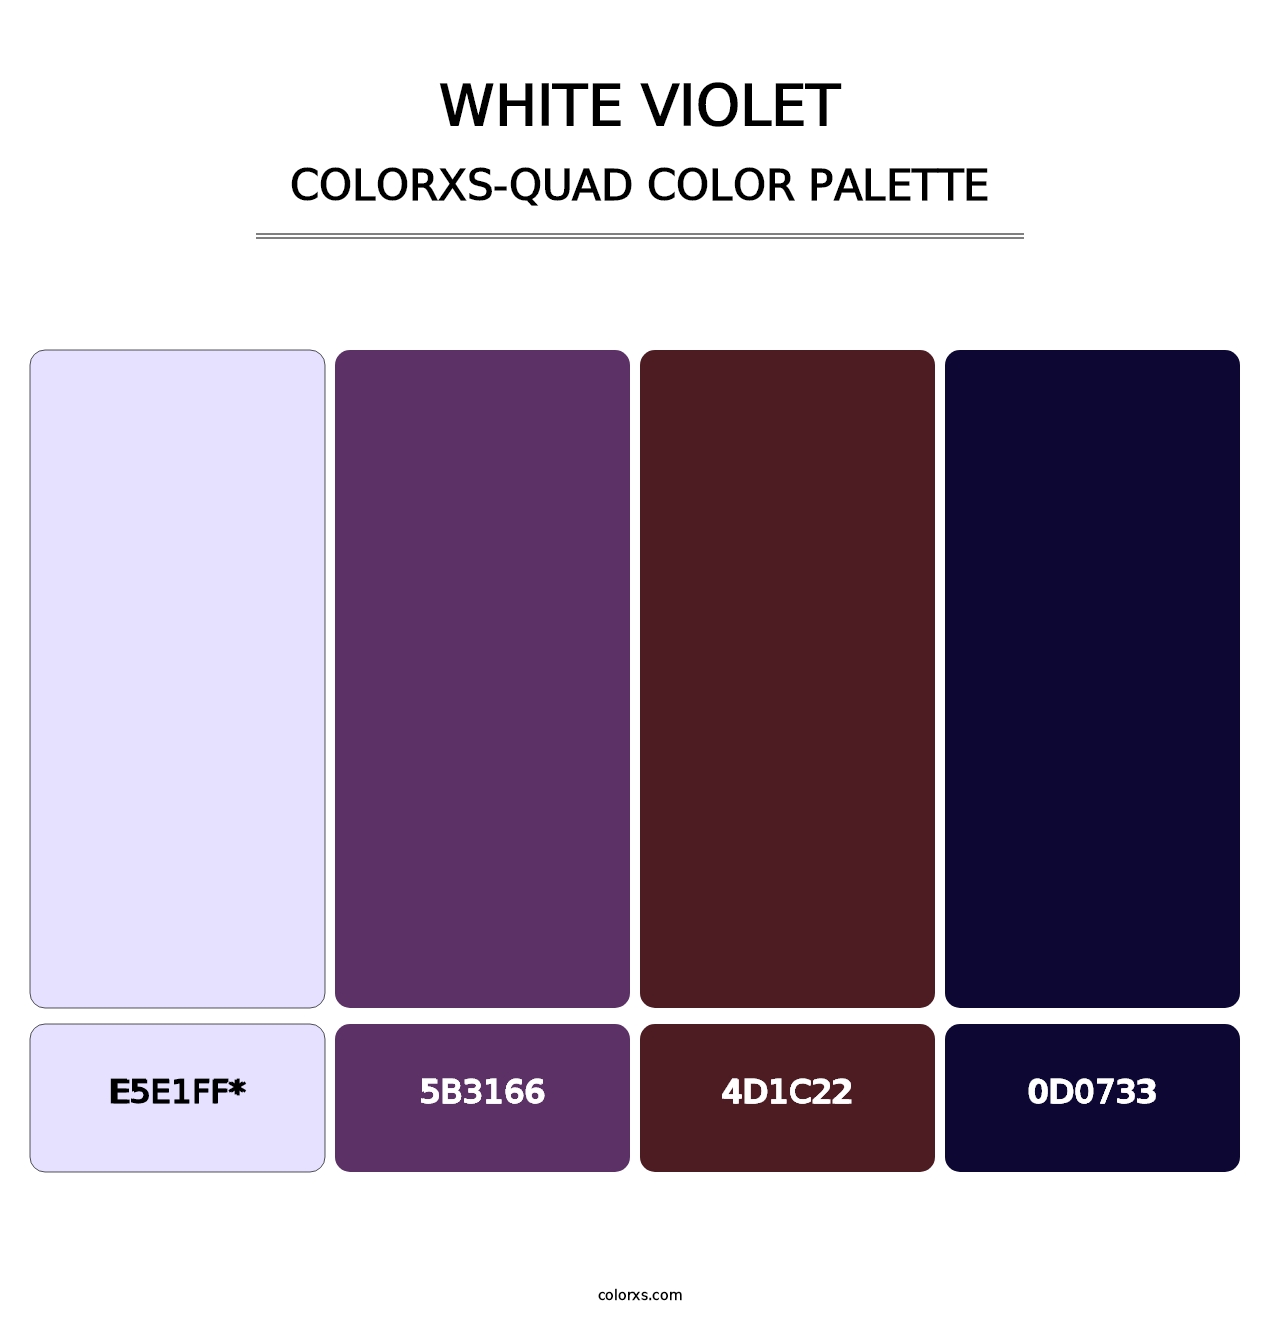 White Violet - Colorxs Quad Palette